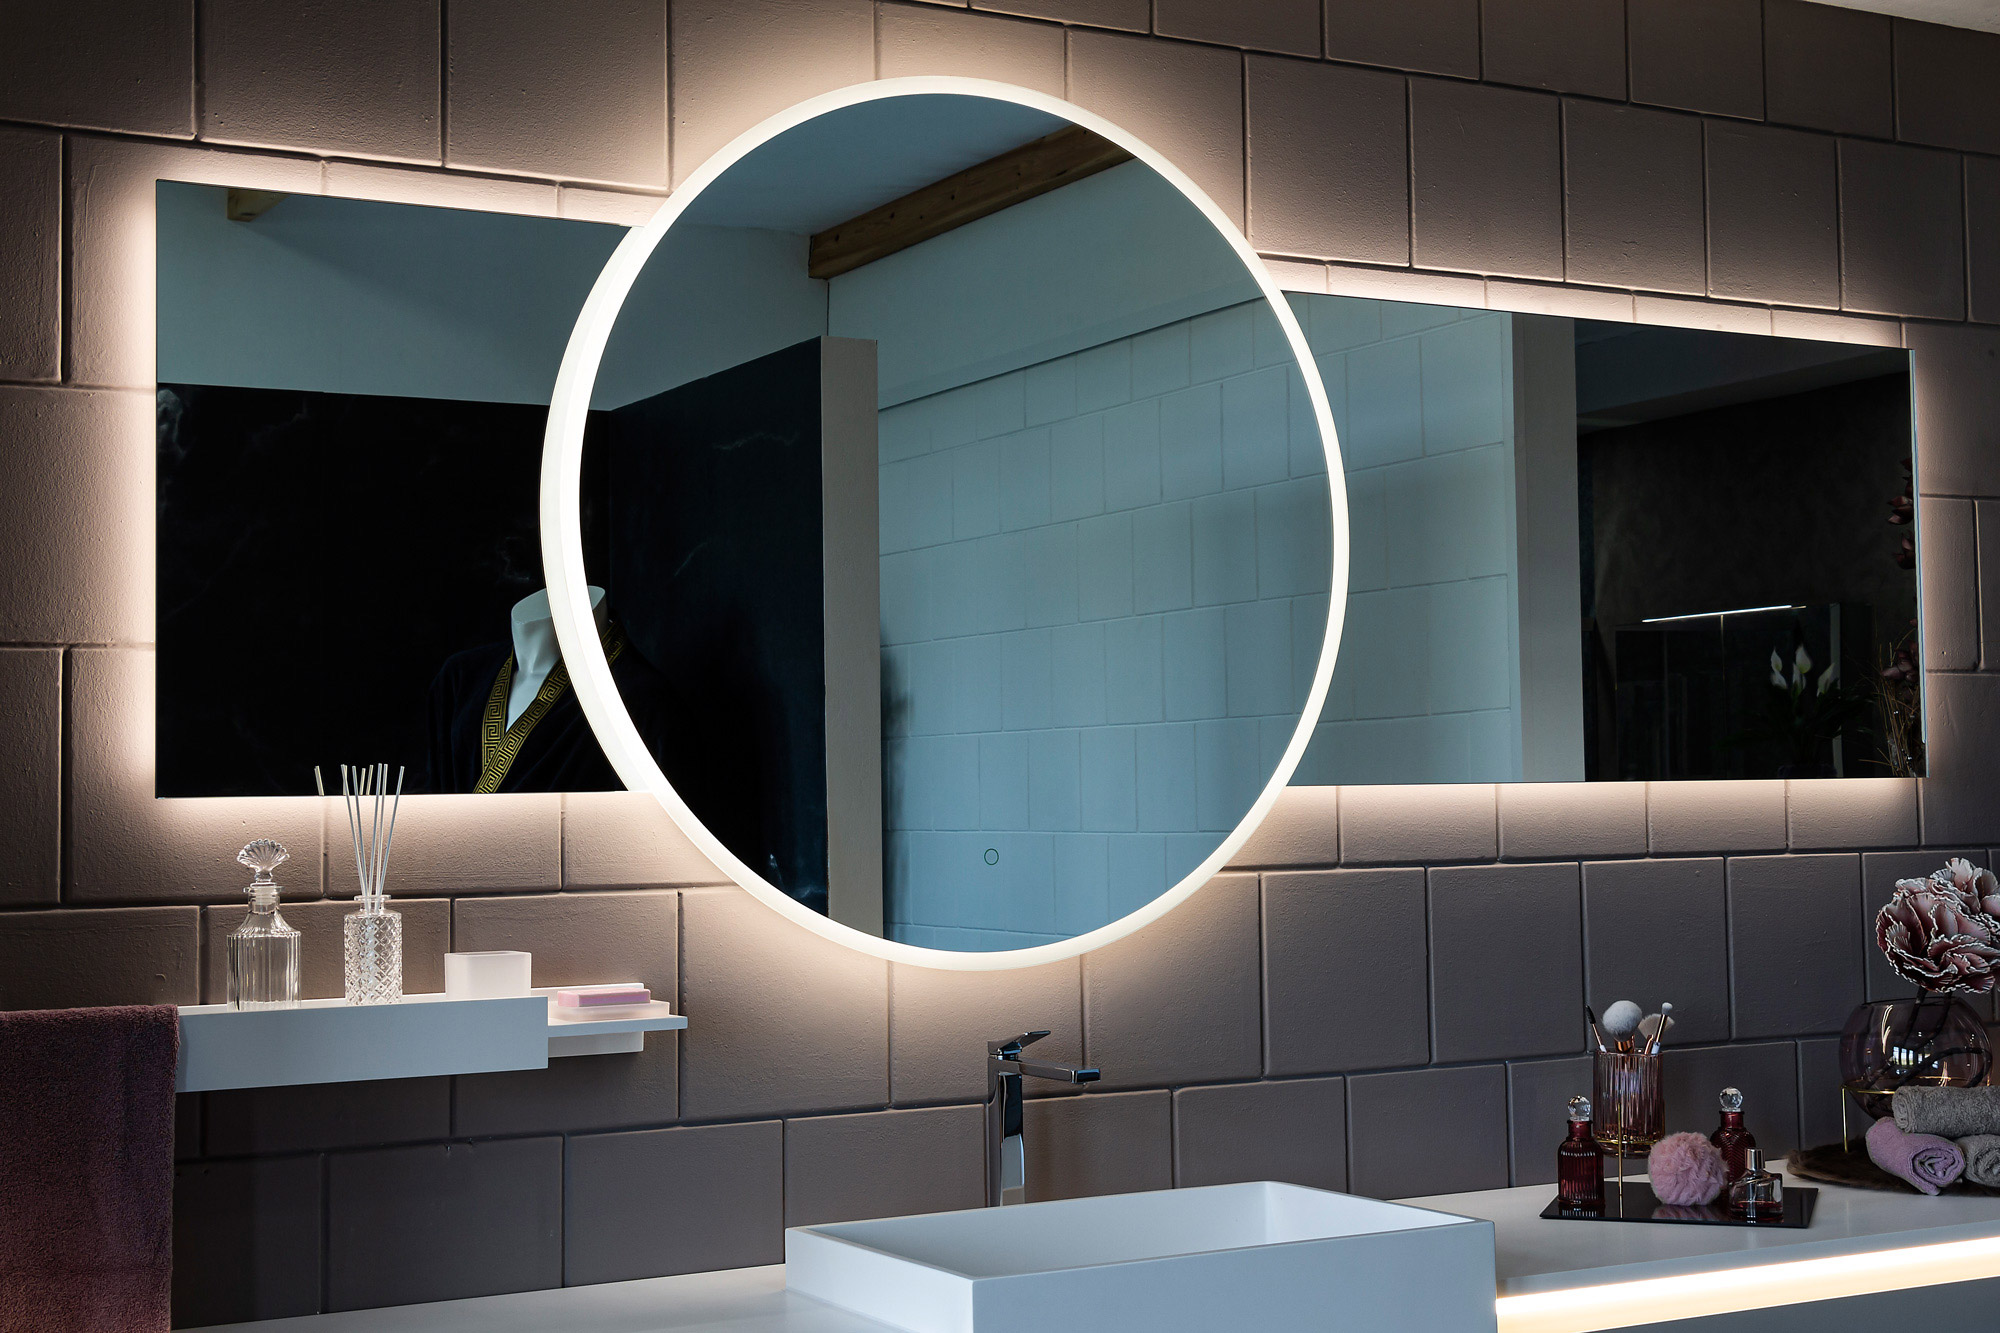 Ein exklusiver Spiegel in beeindruckender Größe von 240 cm, mit einer runden Mitte von 100 cm, warmen und kalten Lichtern sowie einer praktischen Dimmfunktion. Eleganz im Großformat für Ihr Badezimmer.